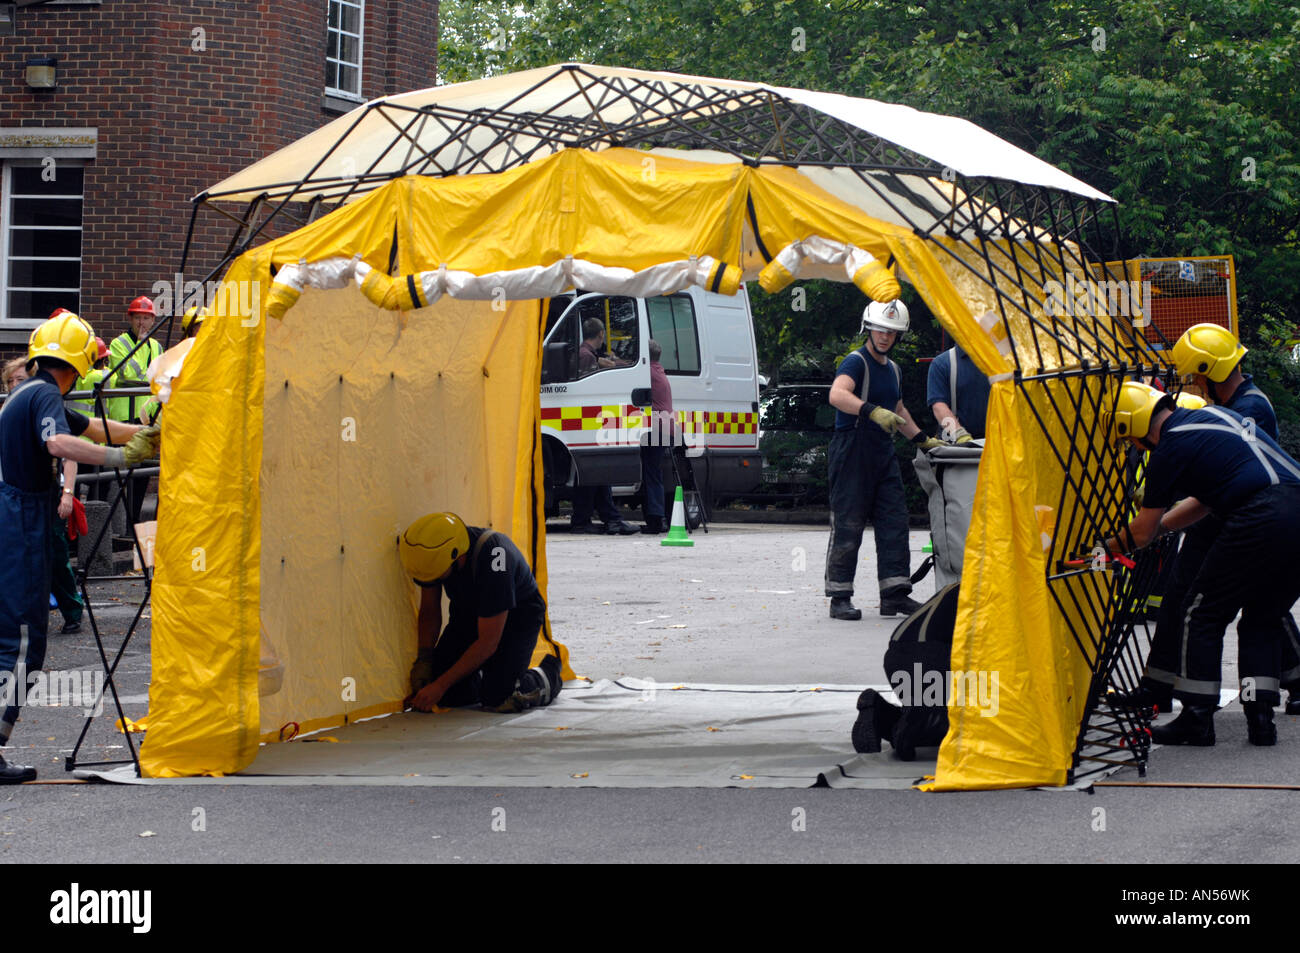 Unidad de ducha de descontaminación utilizadas por los servicios de emergencia tomando parte en un ataque químico o biológico ejercicio, Gran Bretaña, REINO UNIDO Foto de stock